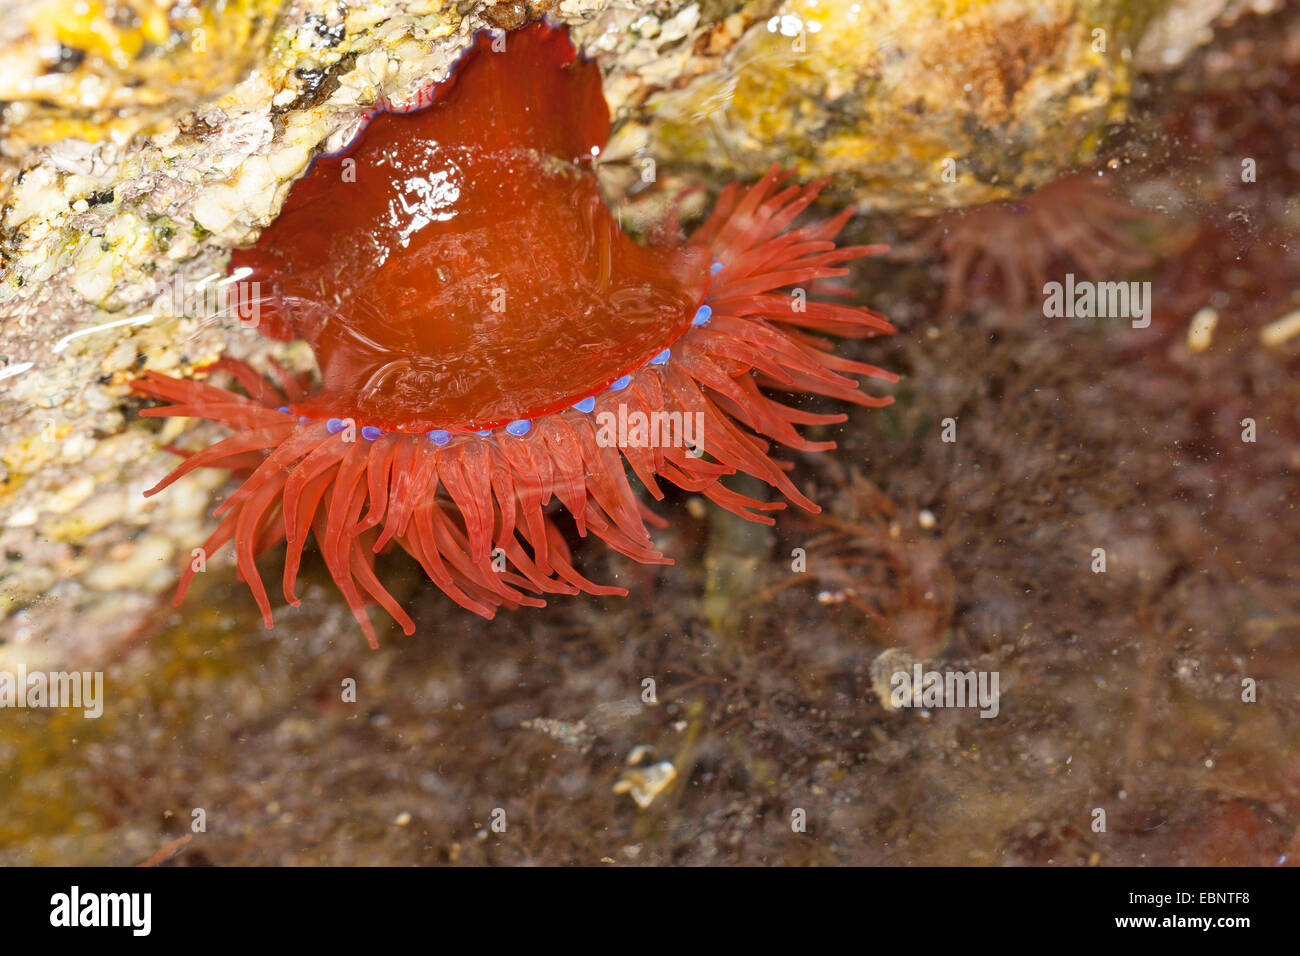 Mikrokügelchen Anemone, rote Seeanemone, Pflaume Anemone, Mikrokügelchen-Anemone (Actinia Equina), Unterwasser, Deutschland Stockfoto